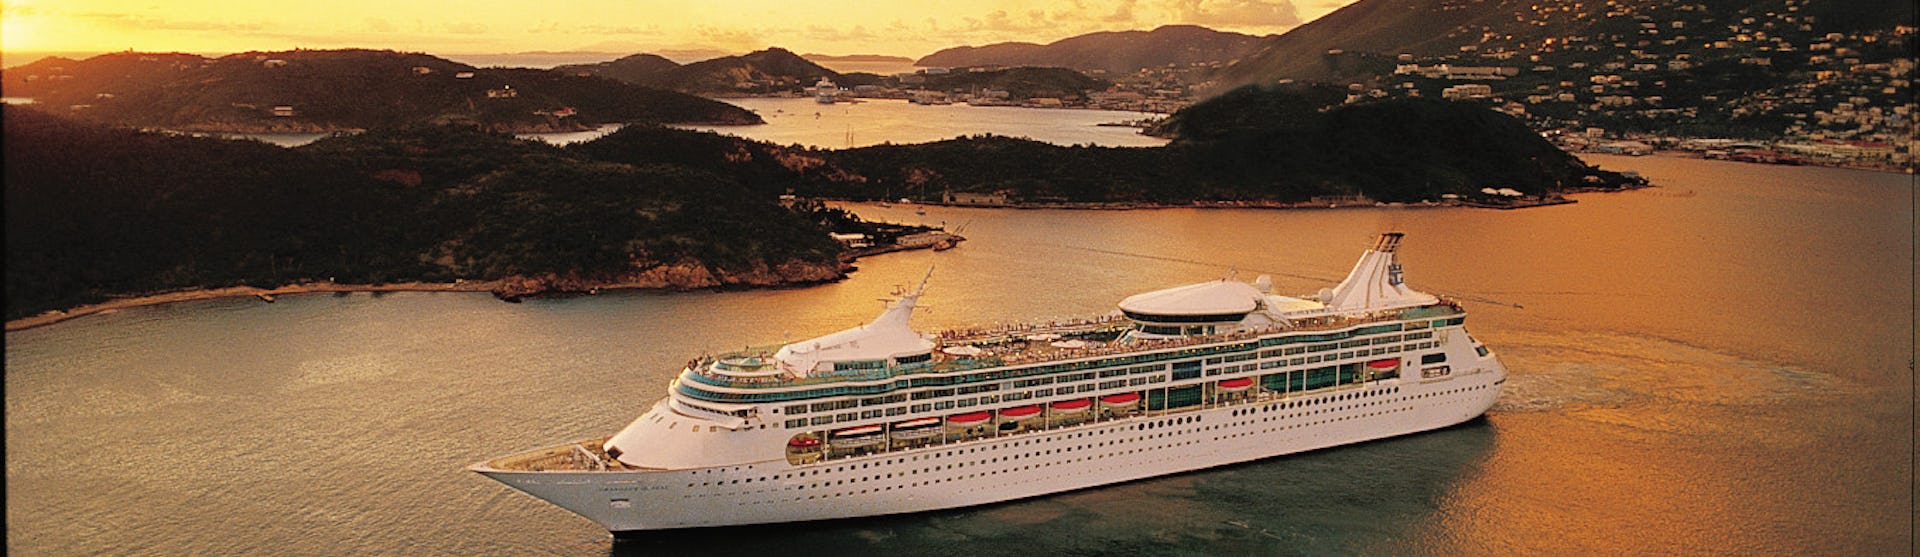 Bild på Rhapsody of the Seas, taget från sidan, utanför en Karibisk ö i solnedgången.